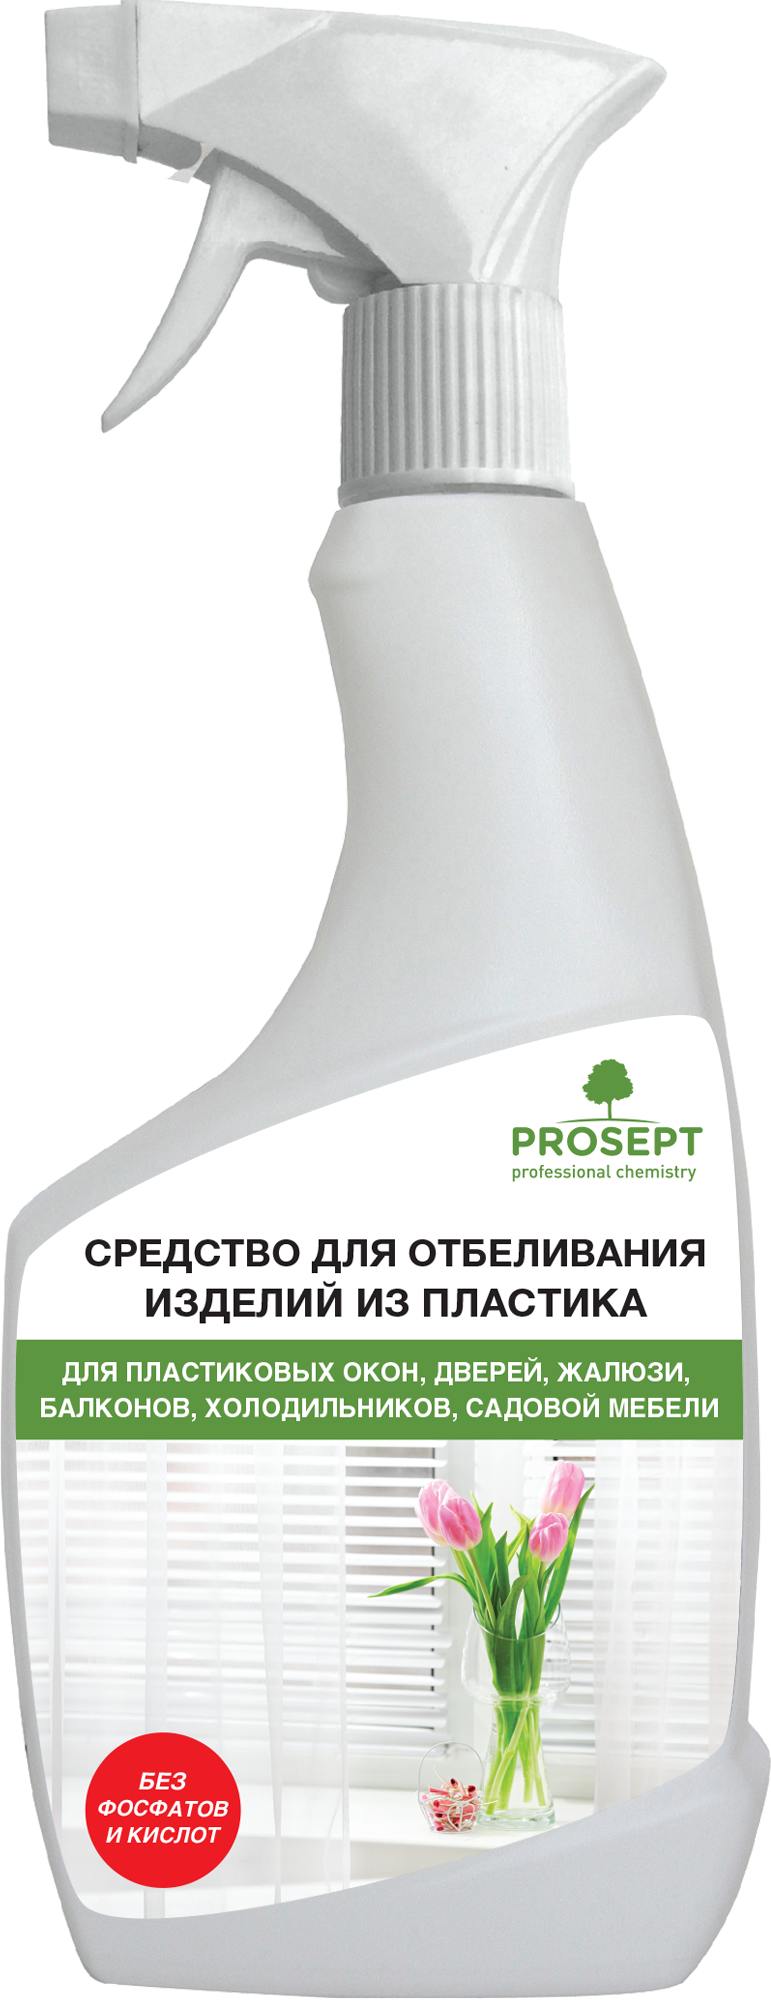 Как сделать жидкость для омывателя стекла дома - простые способы | РБК Украина